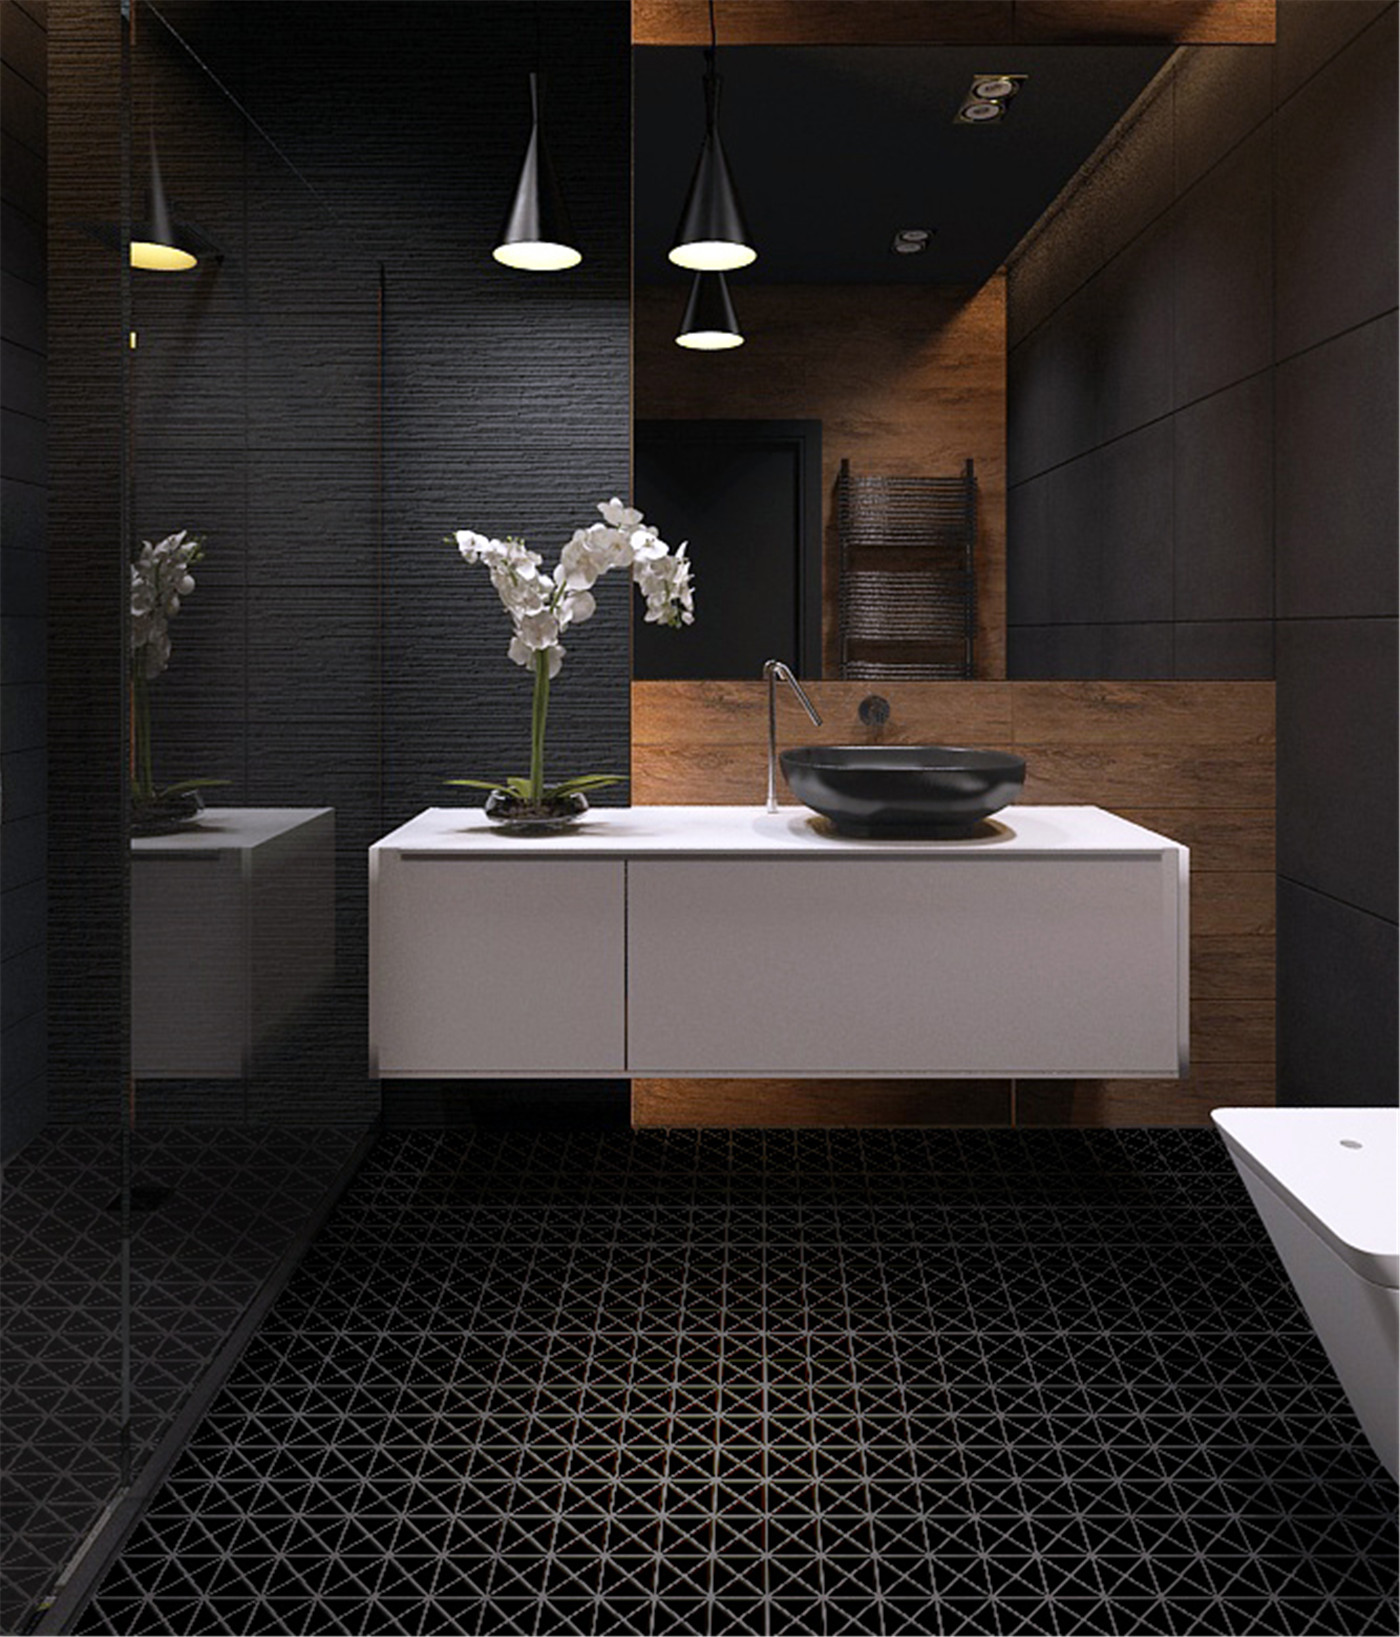 img/bathroom-tile-flooring-bilder.jpg